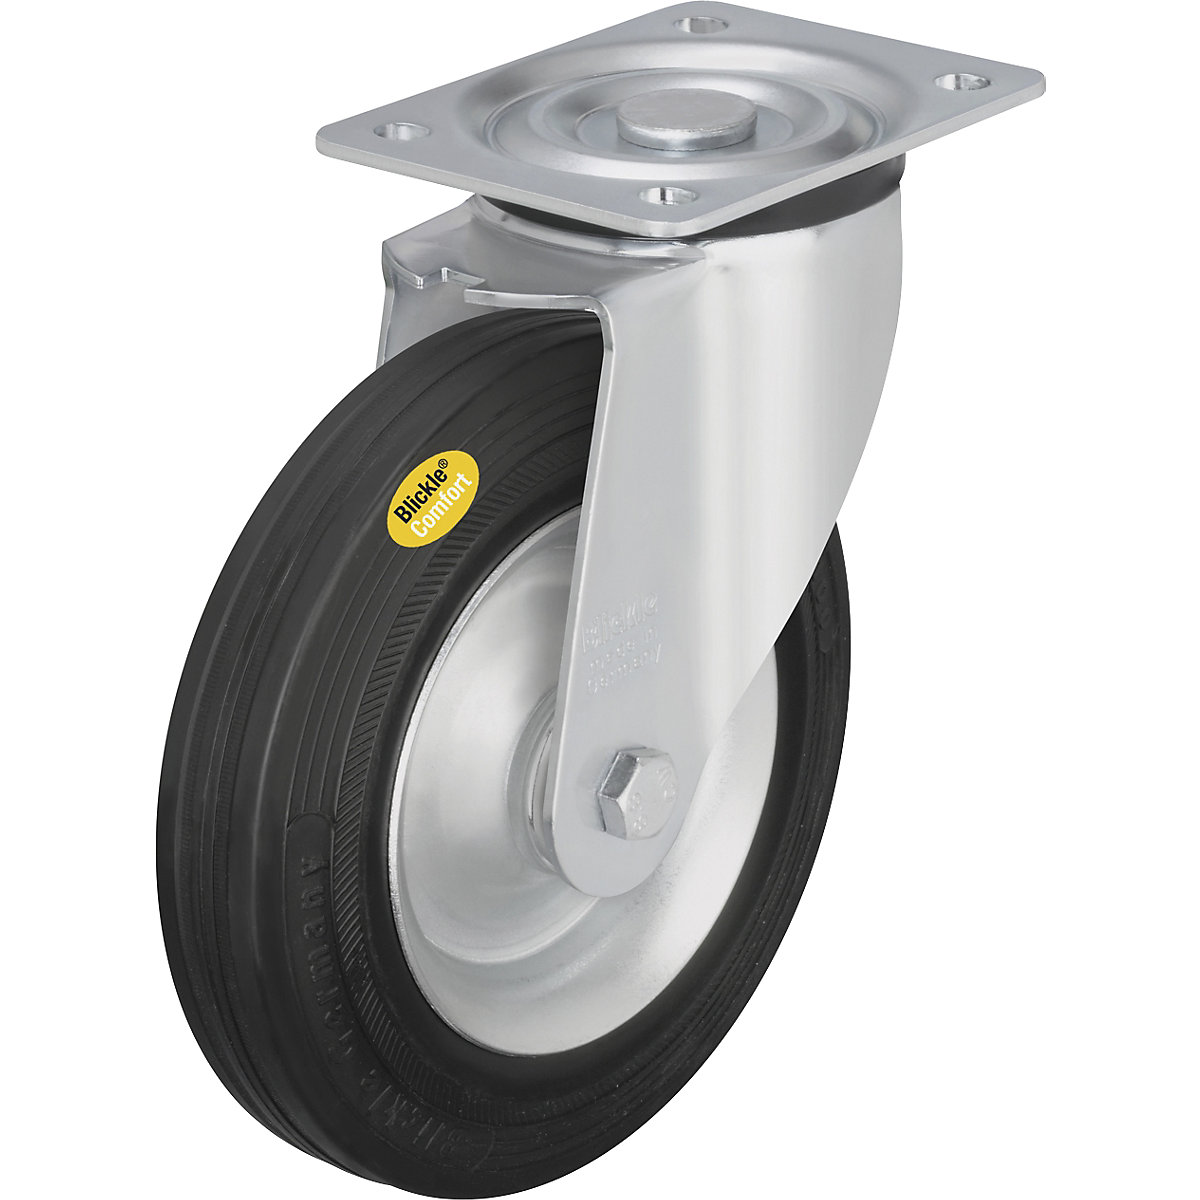 Two component solid rubber tyre, wheel Ø x width 125 x 37.5 mm, swivel castor-4